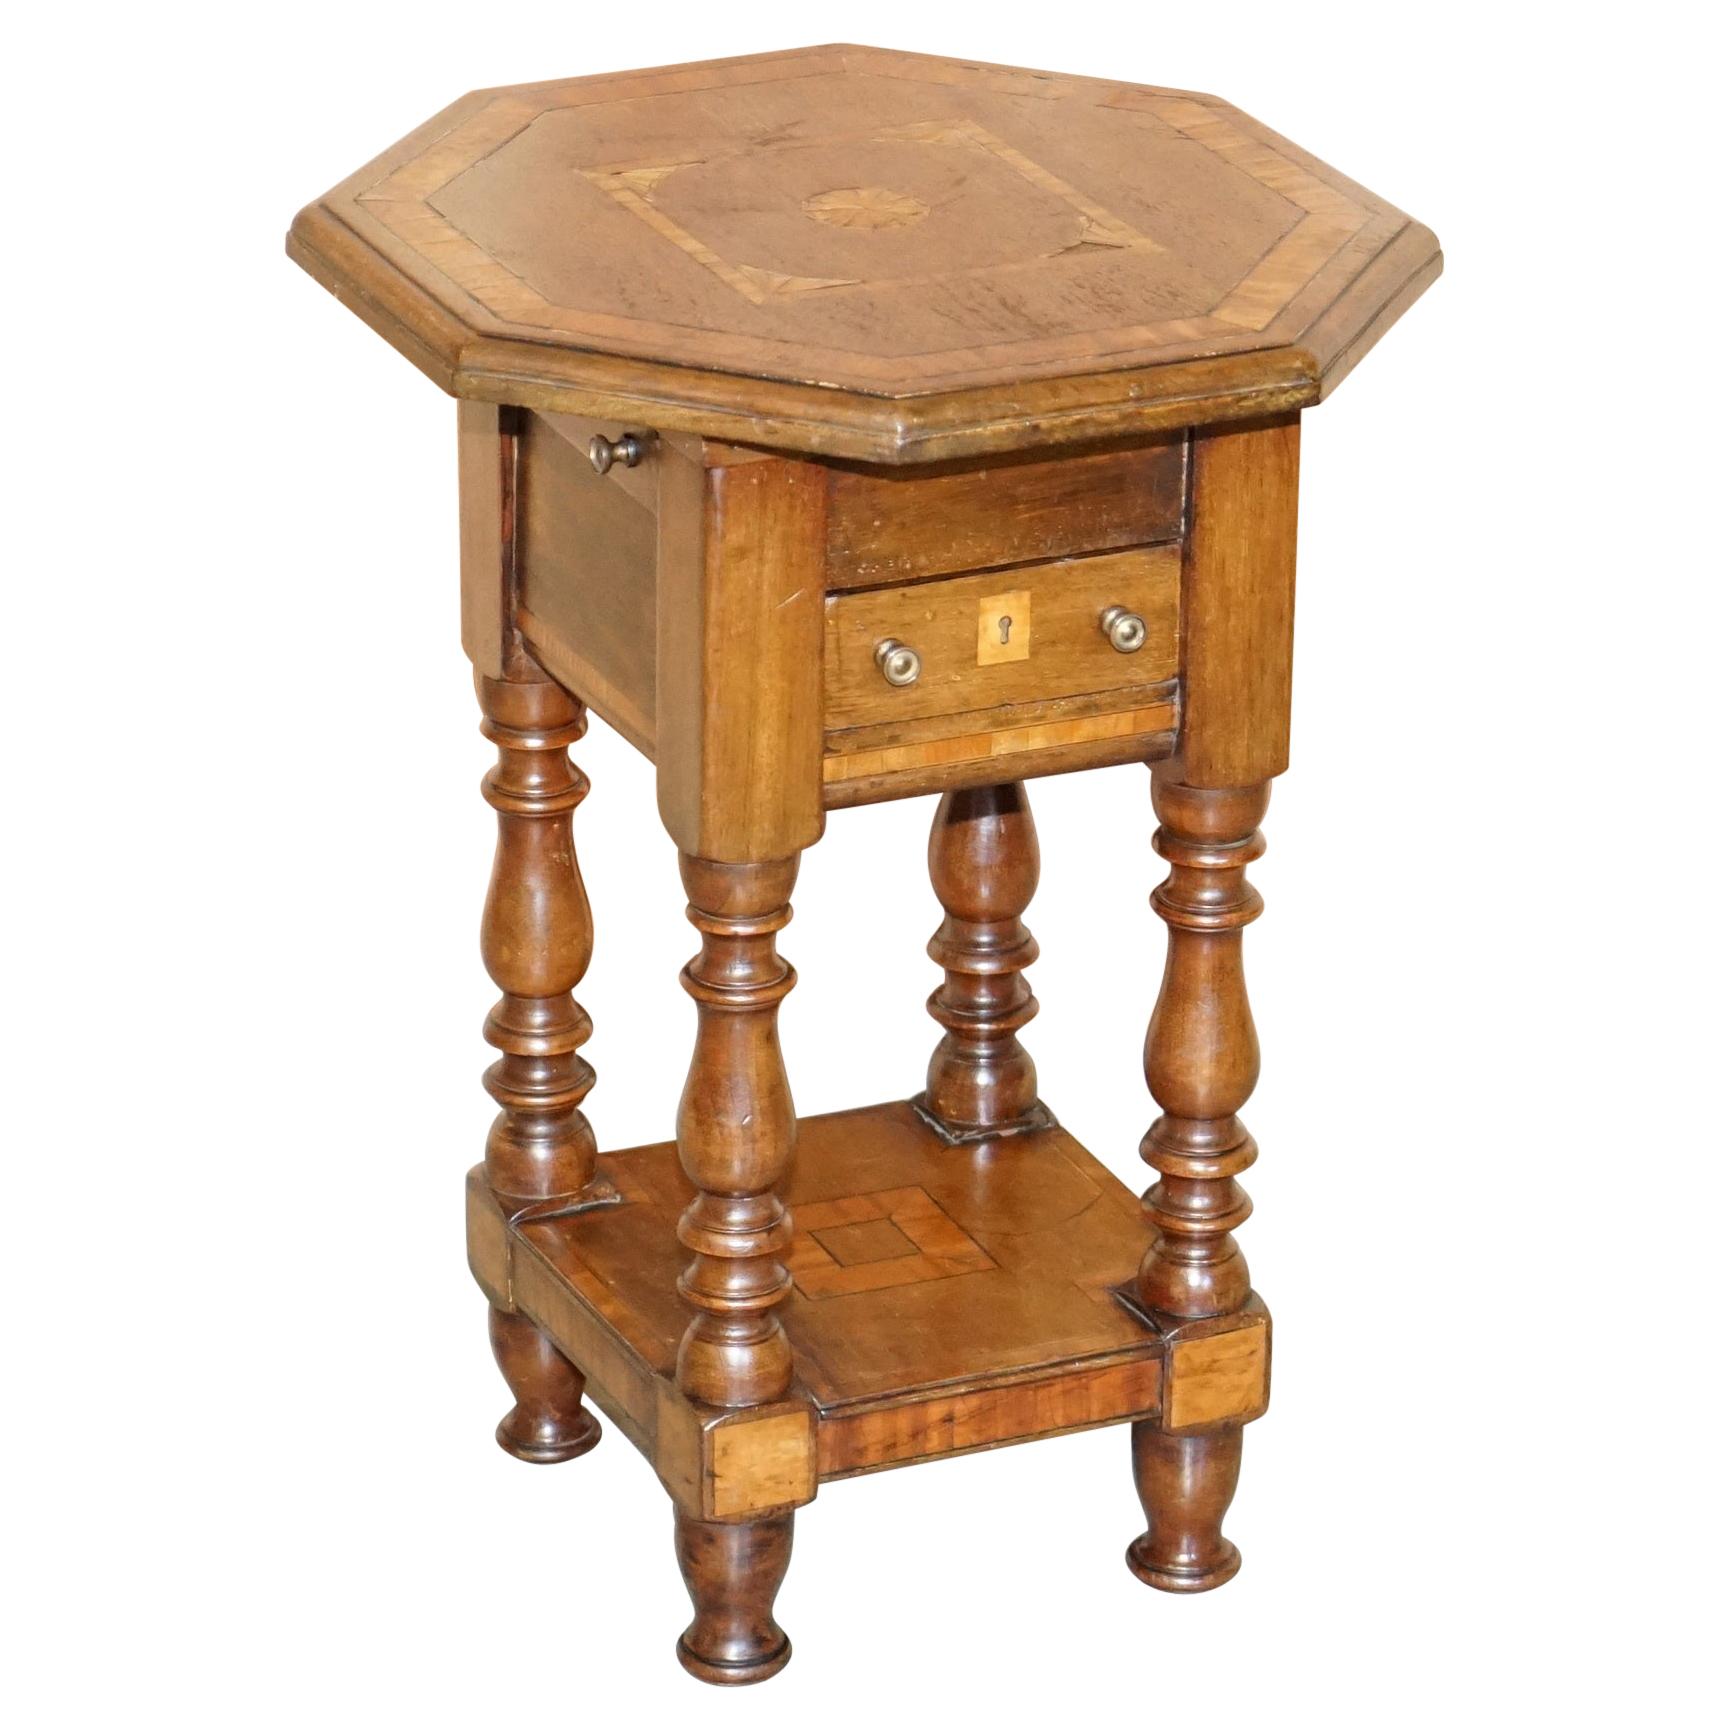 Ravissante table d'appoint victorienne ancienne faite à la main avec tiroirs supérieurs incrustés Sheraton Reival